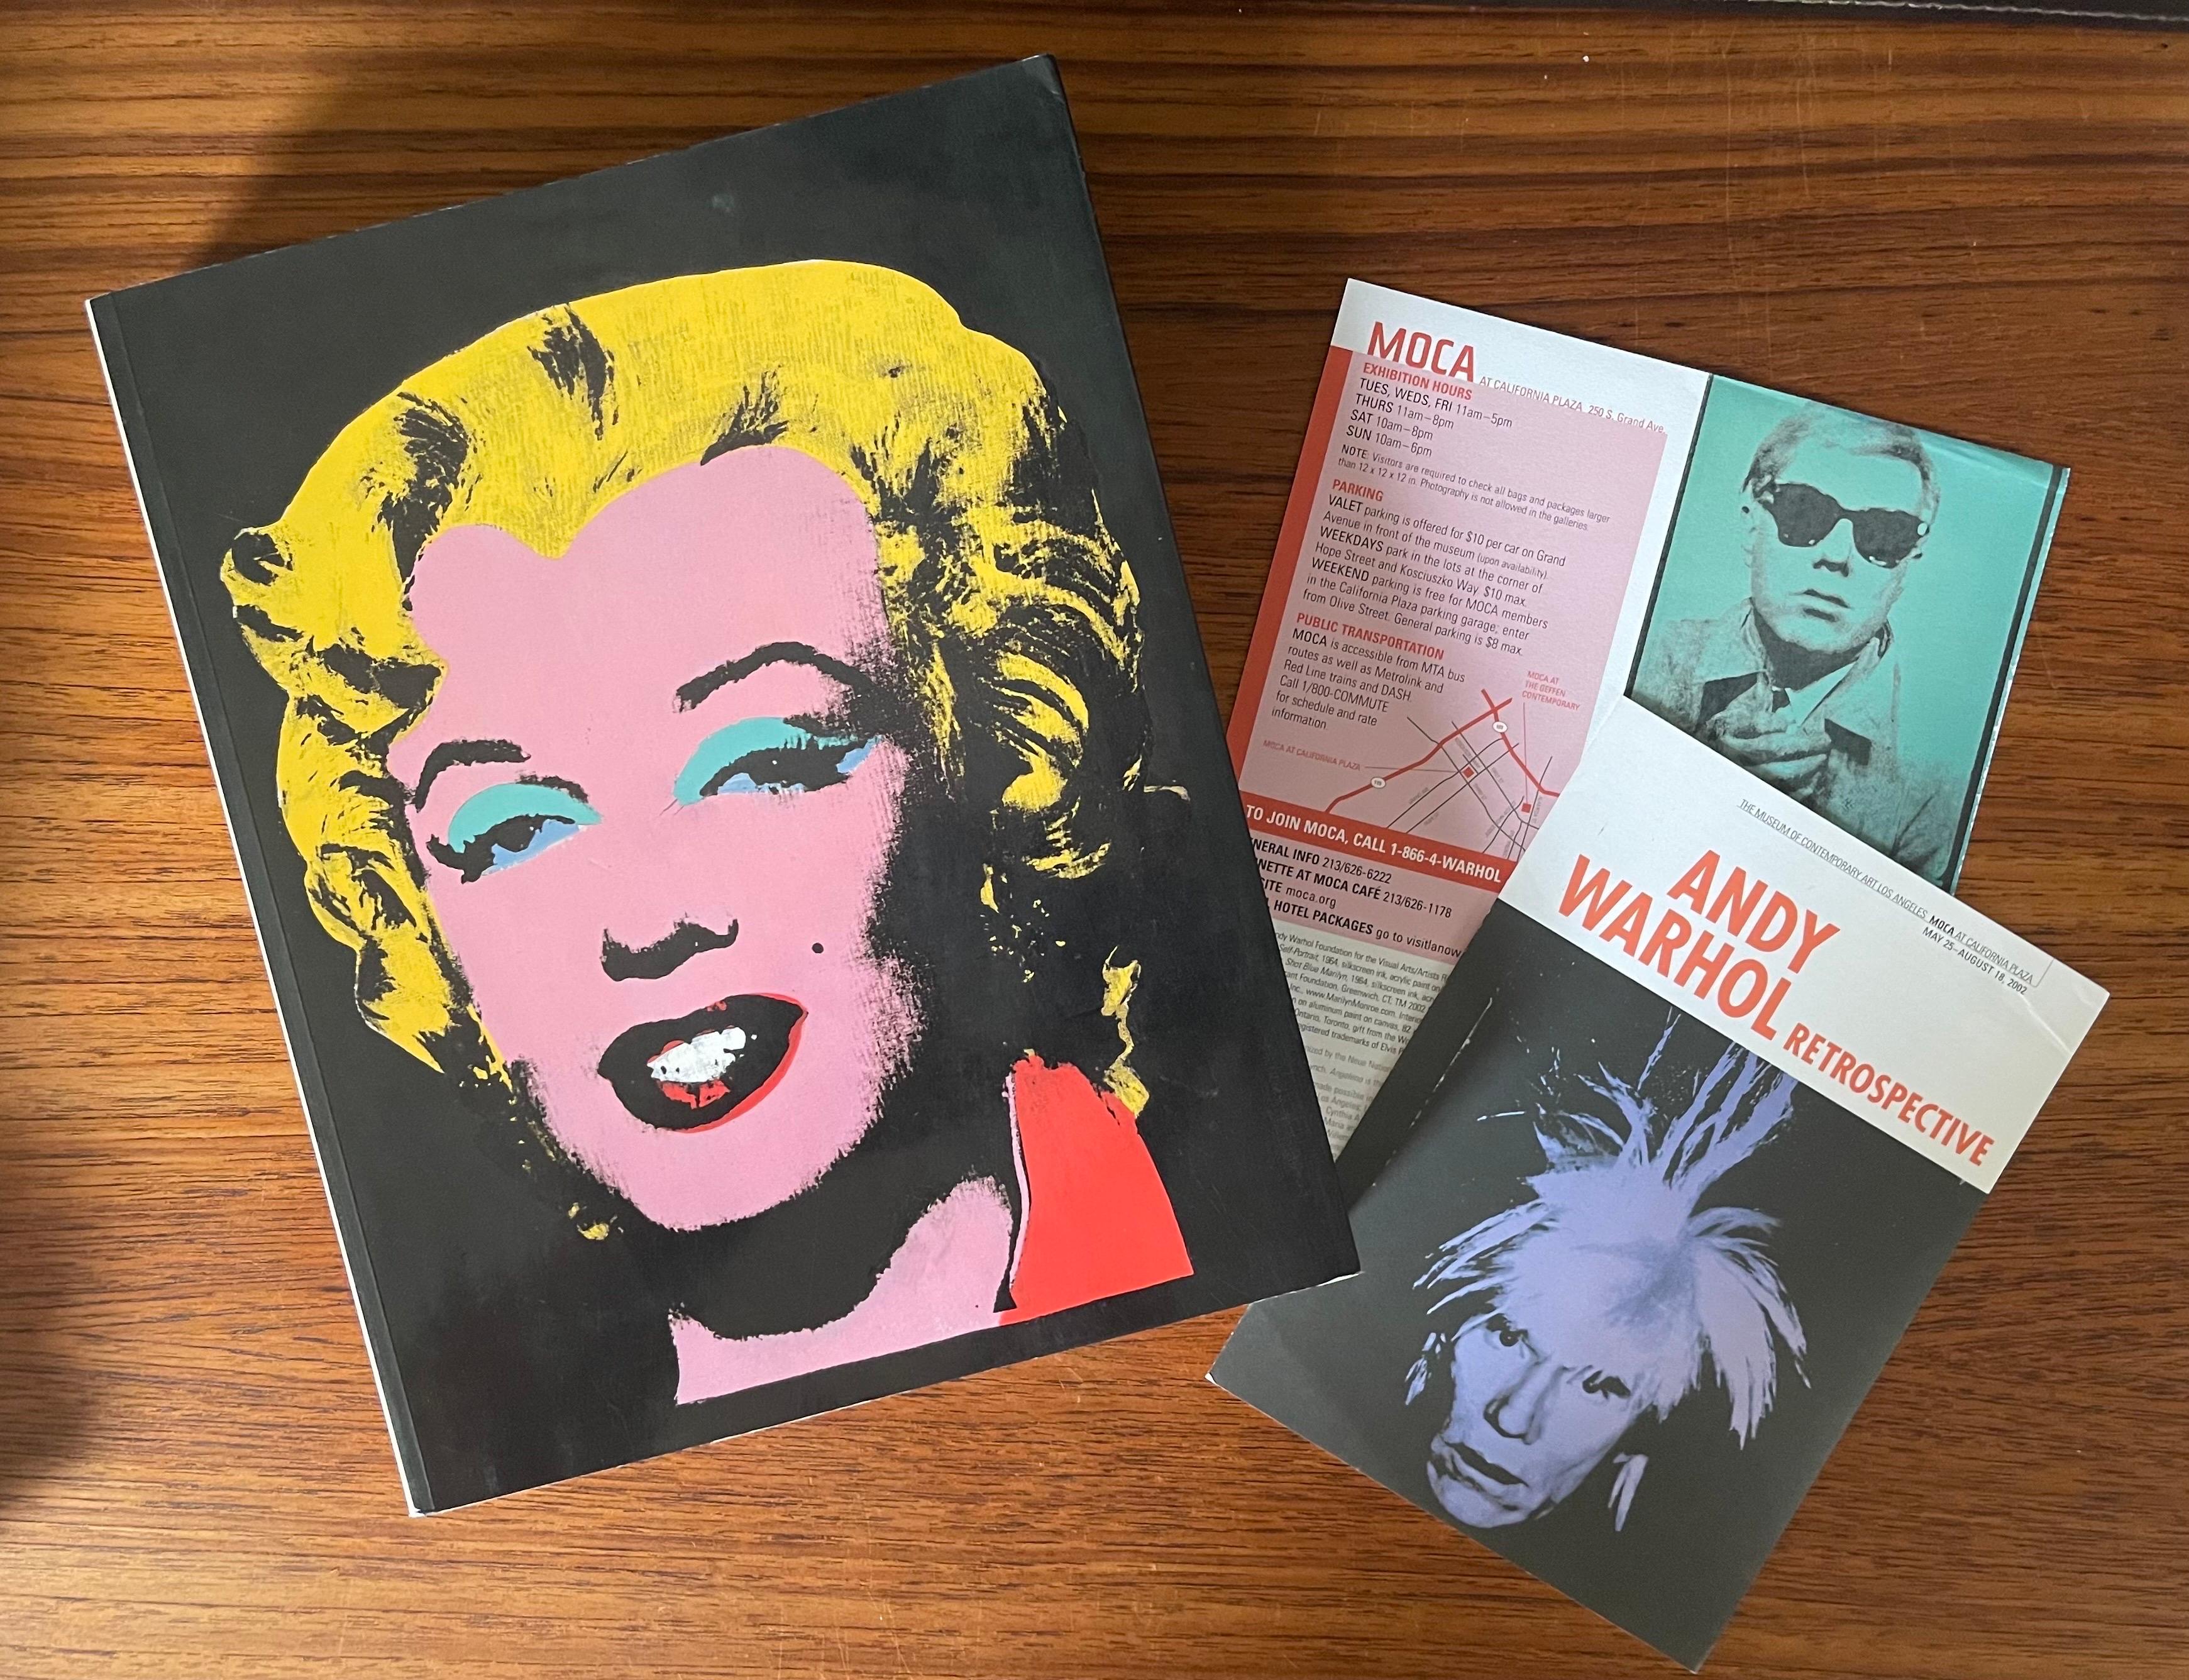 Moca LA 2002: Retrospektive Kunstbuch- und Ausstellungsprogramme von Warhol im Angebot 10